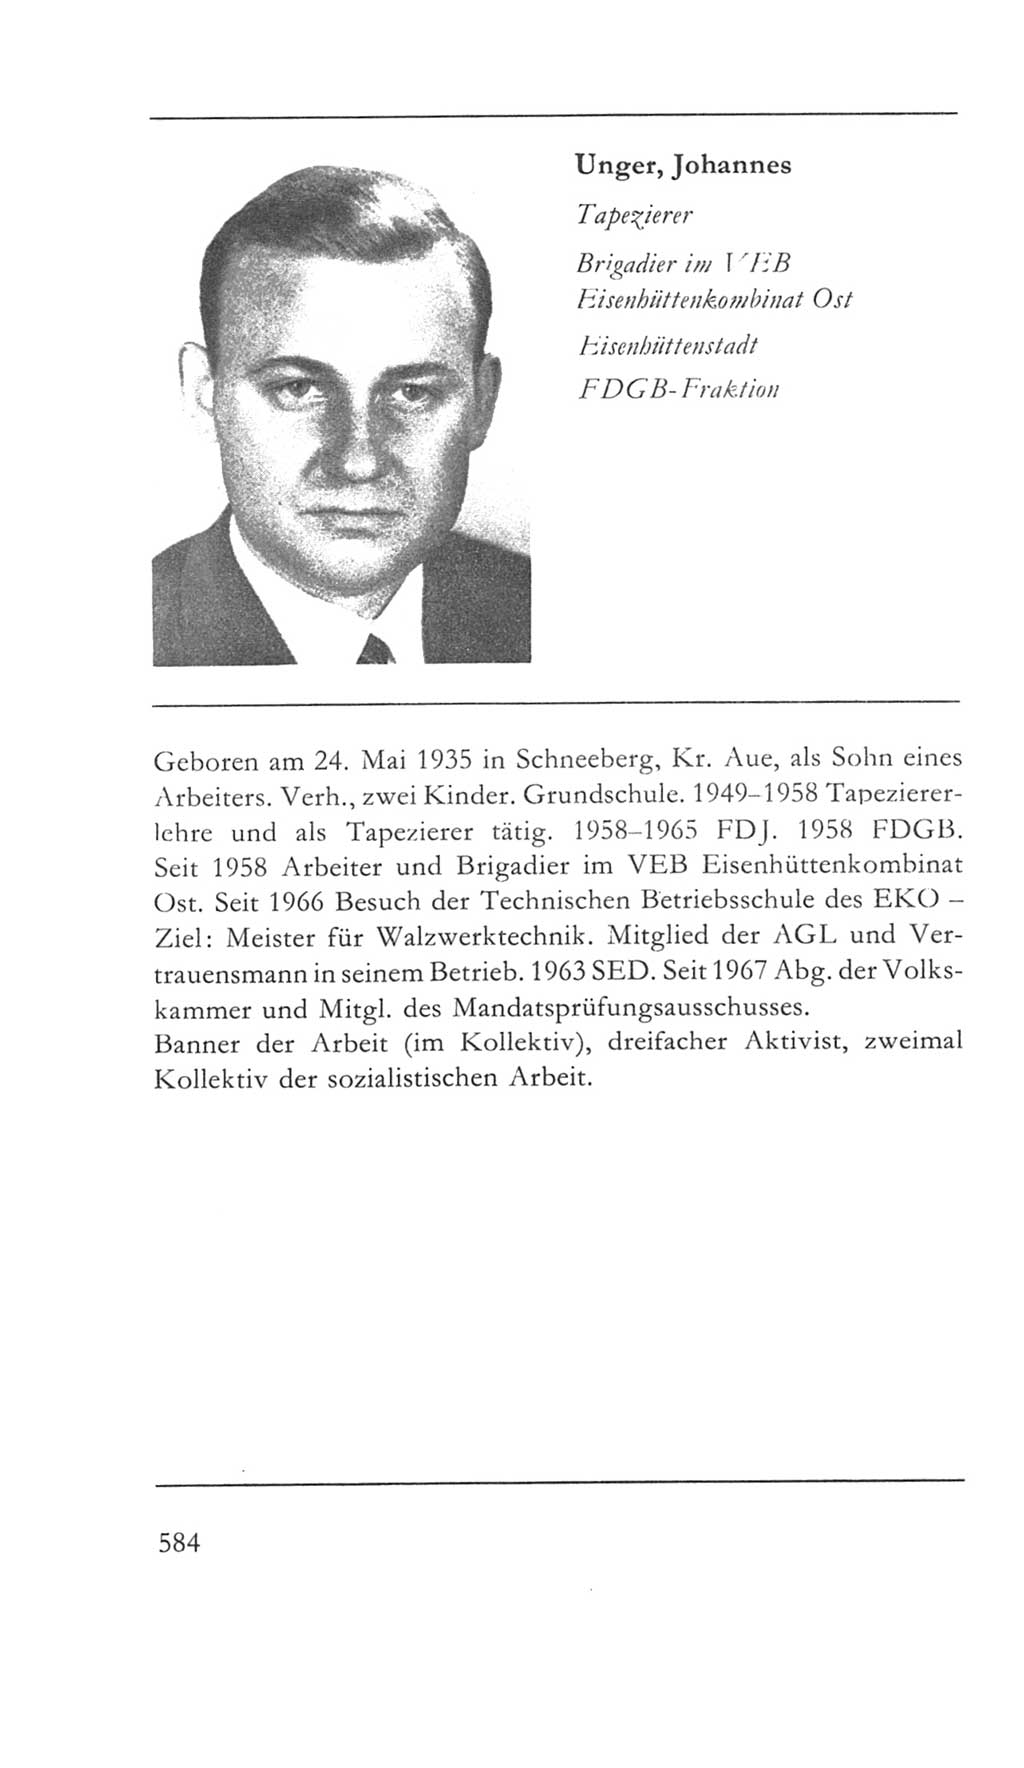 Volkskammer (VK) der Deutschen Demokratischen Republik (DDR) 5. Wahlperiode 1967-1971, Seite 584 (VK. DDR 5. WP. 1967-1971, S. 584)